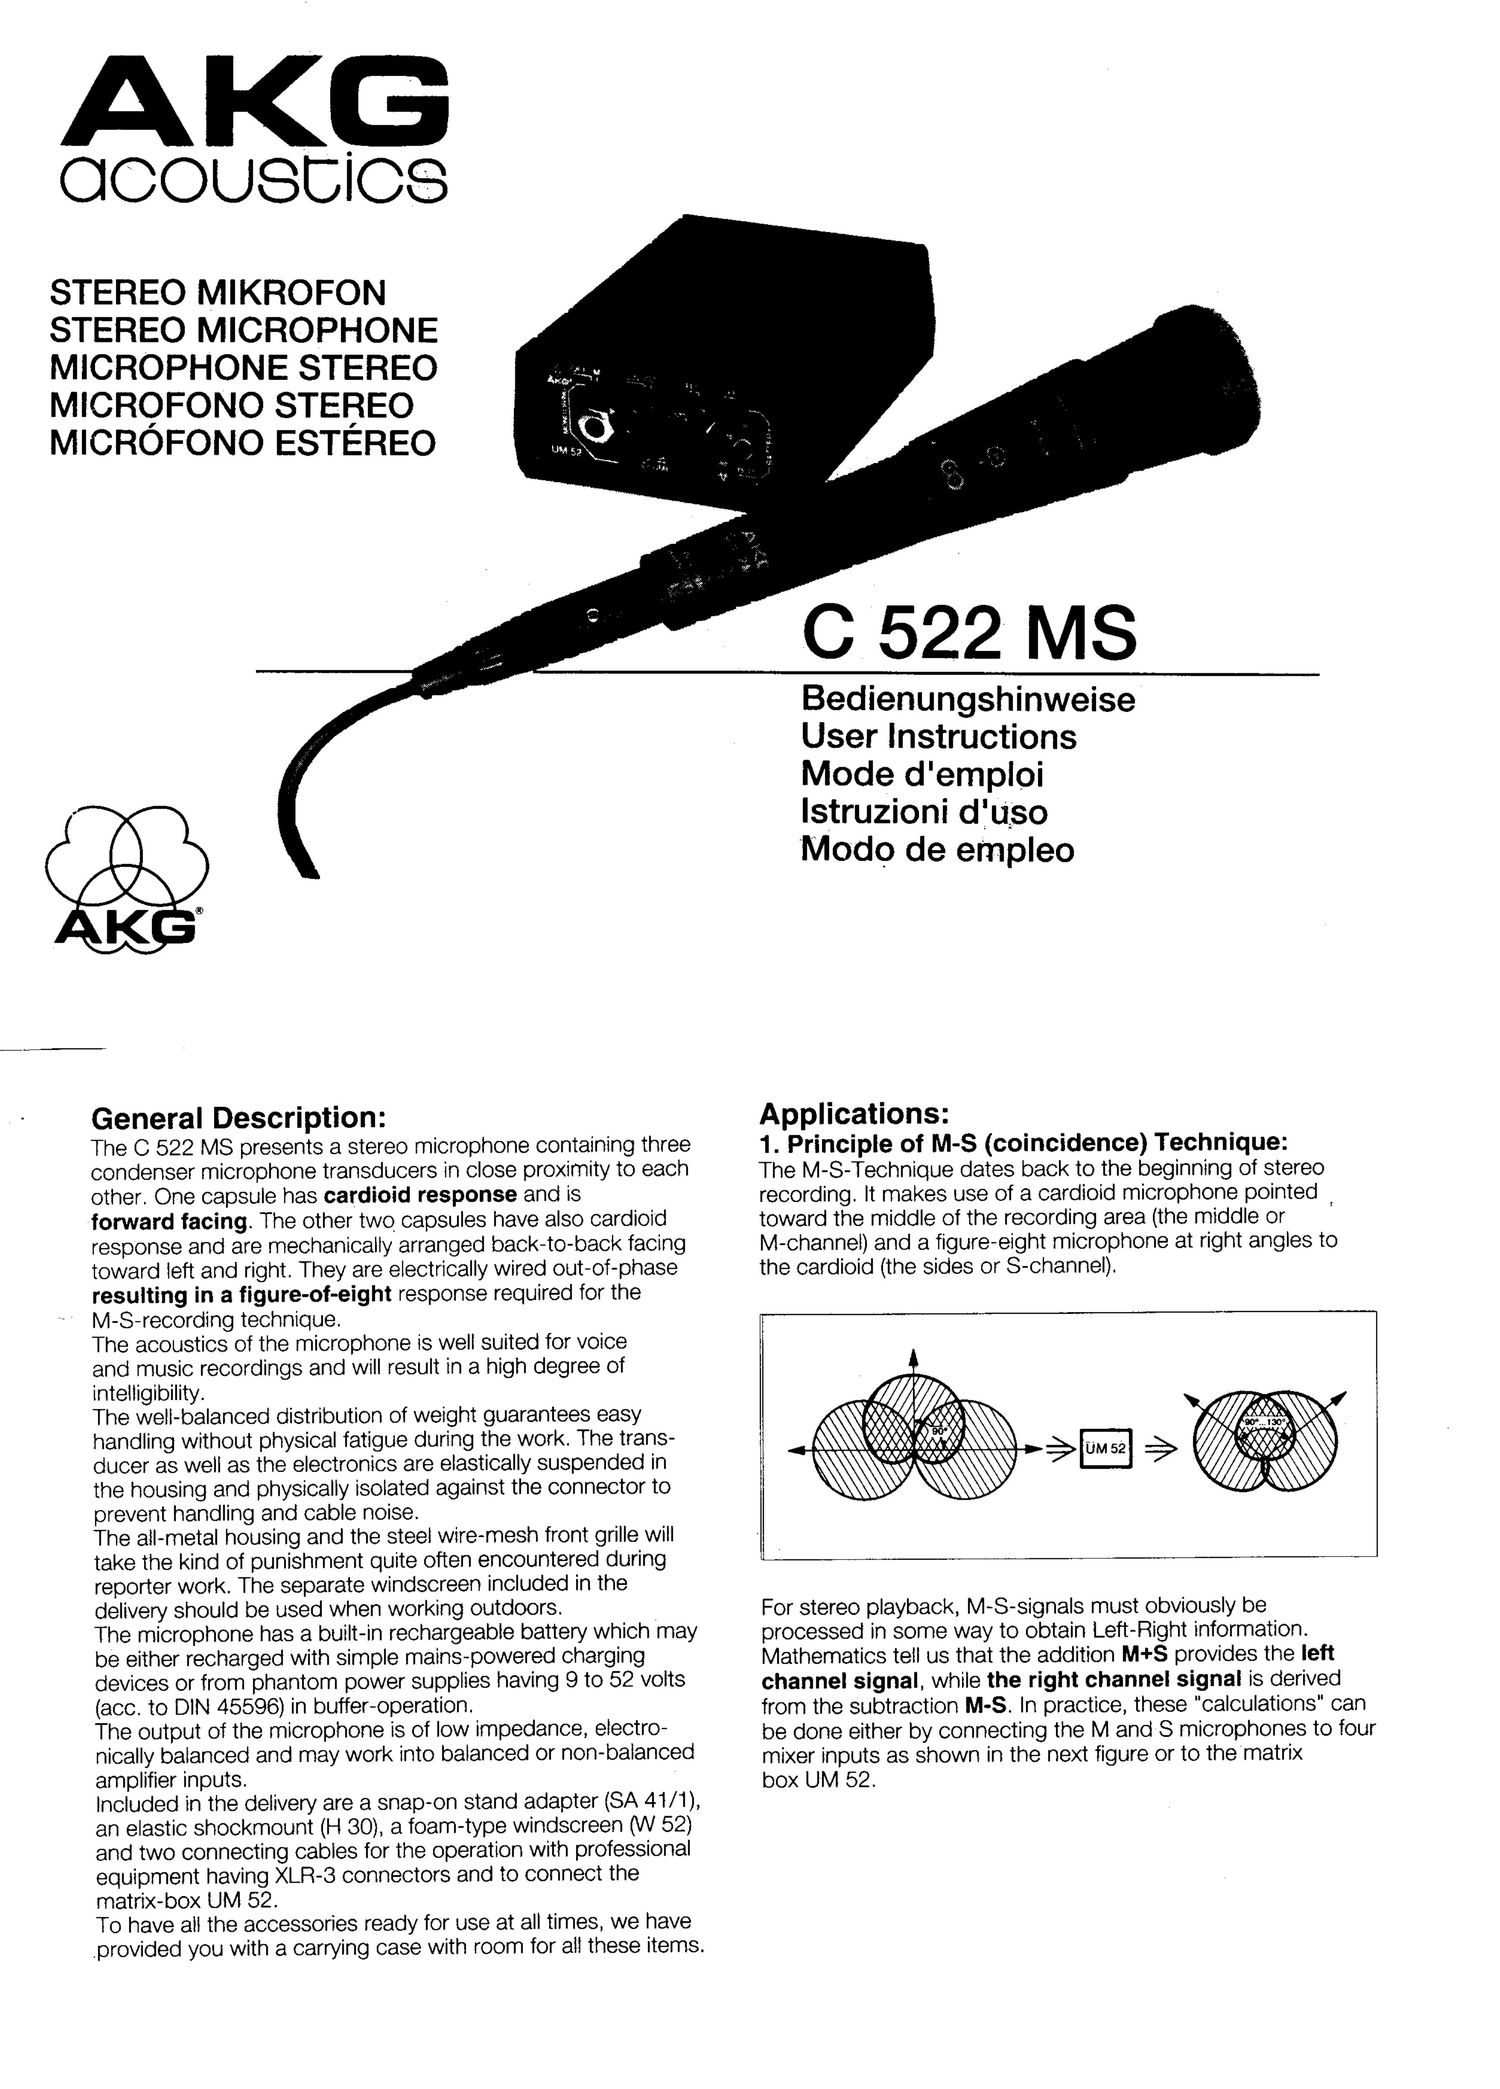 akg c 522 ms owners manual